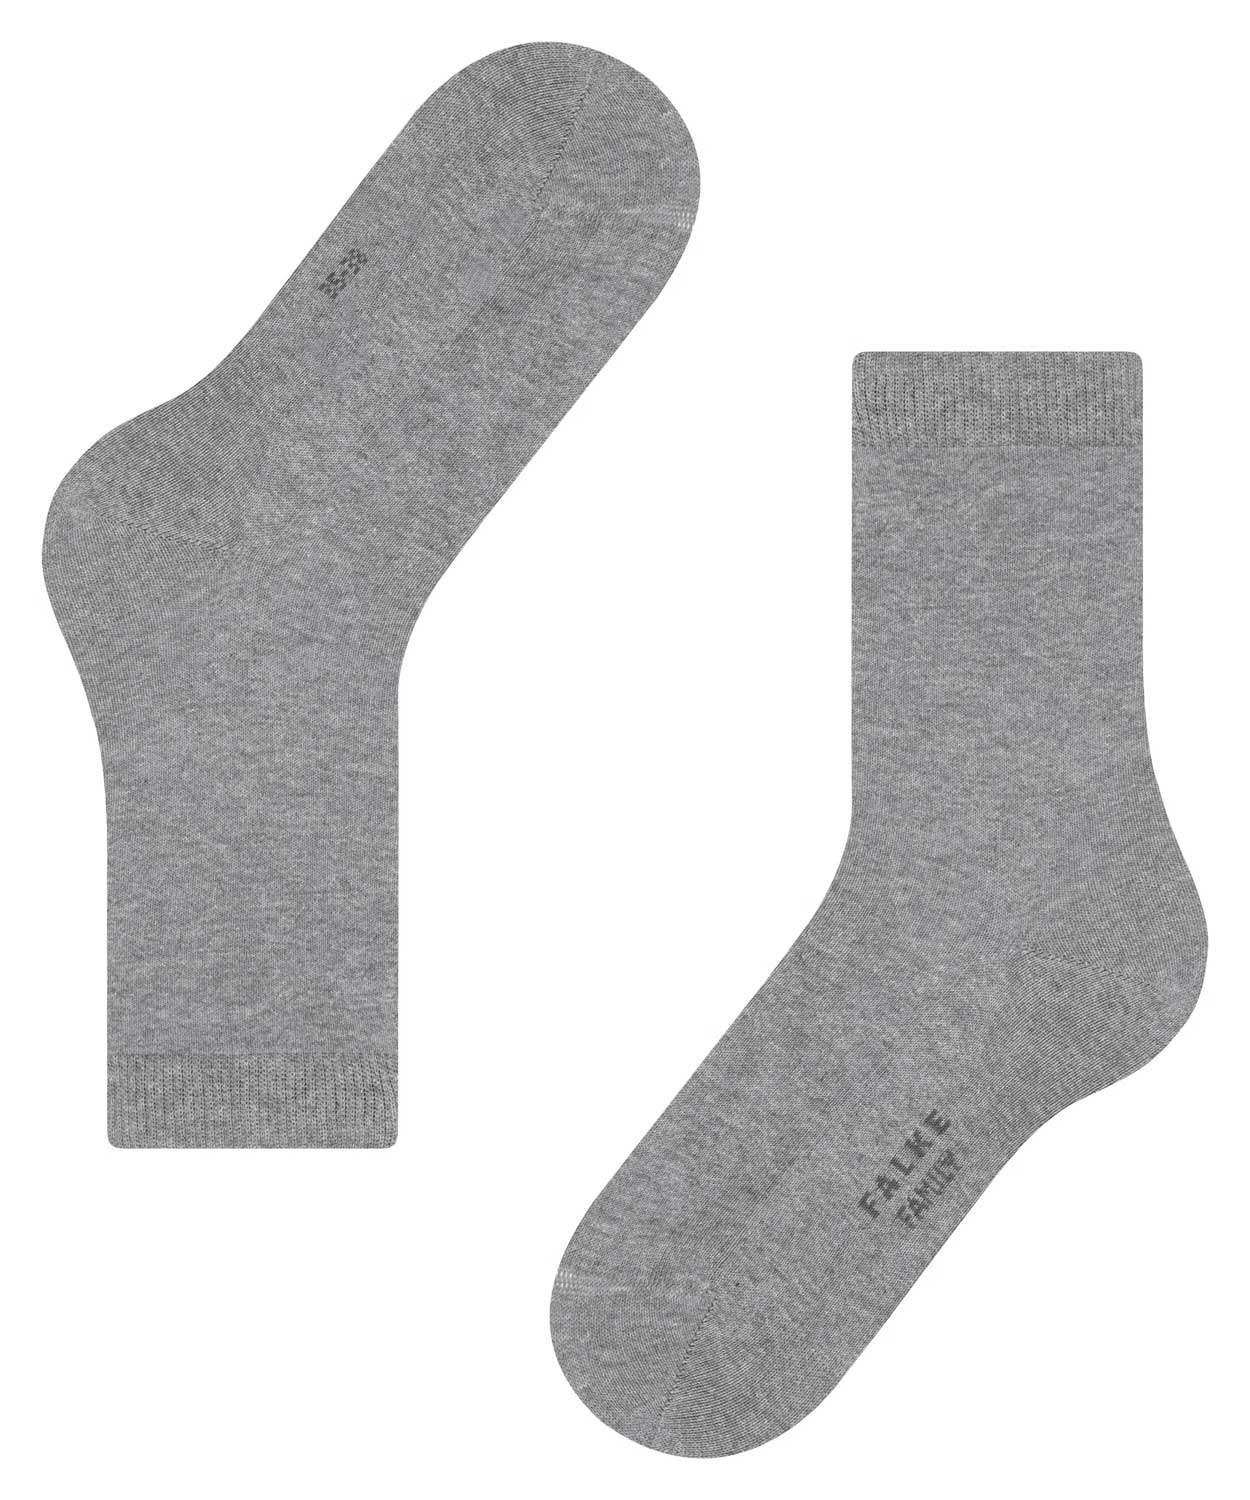 Socks - Family  - Women